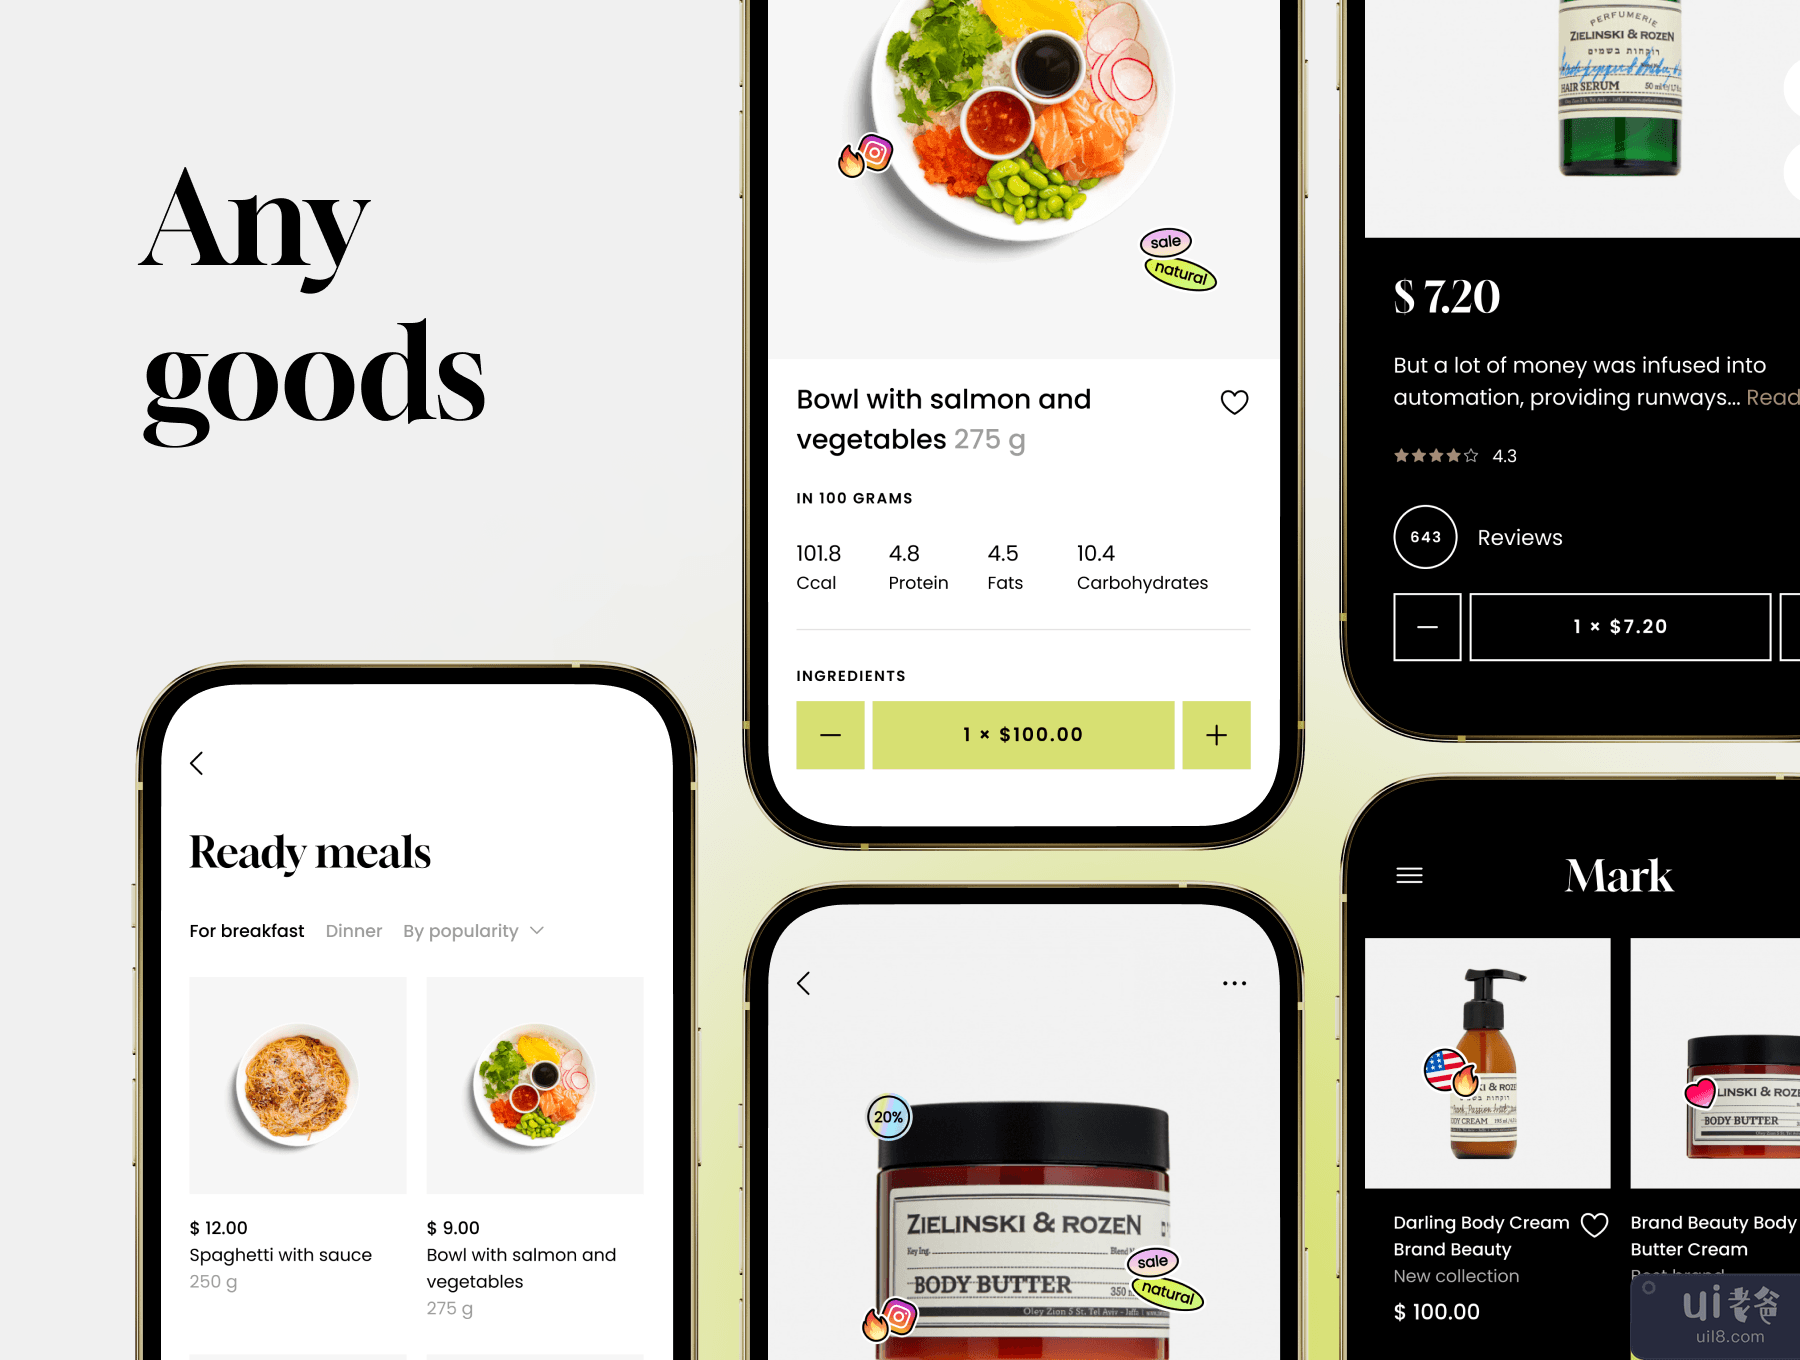 马克购物应用程序 UI 工具包 (Mark Shopping App UI kit)插图2